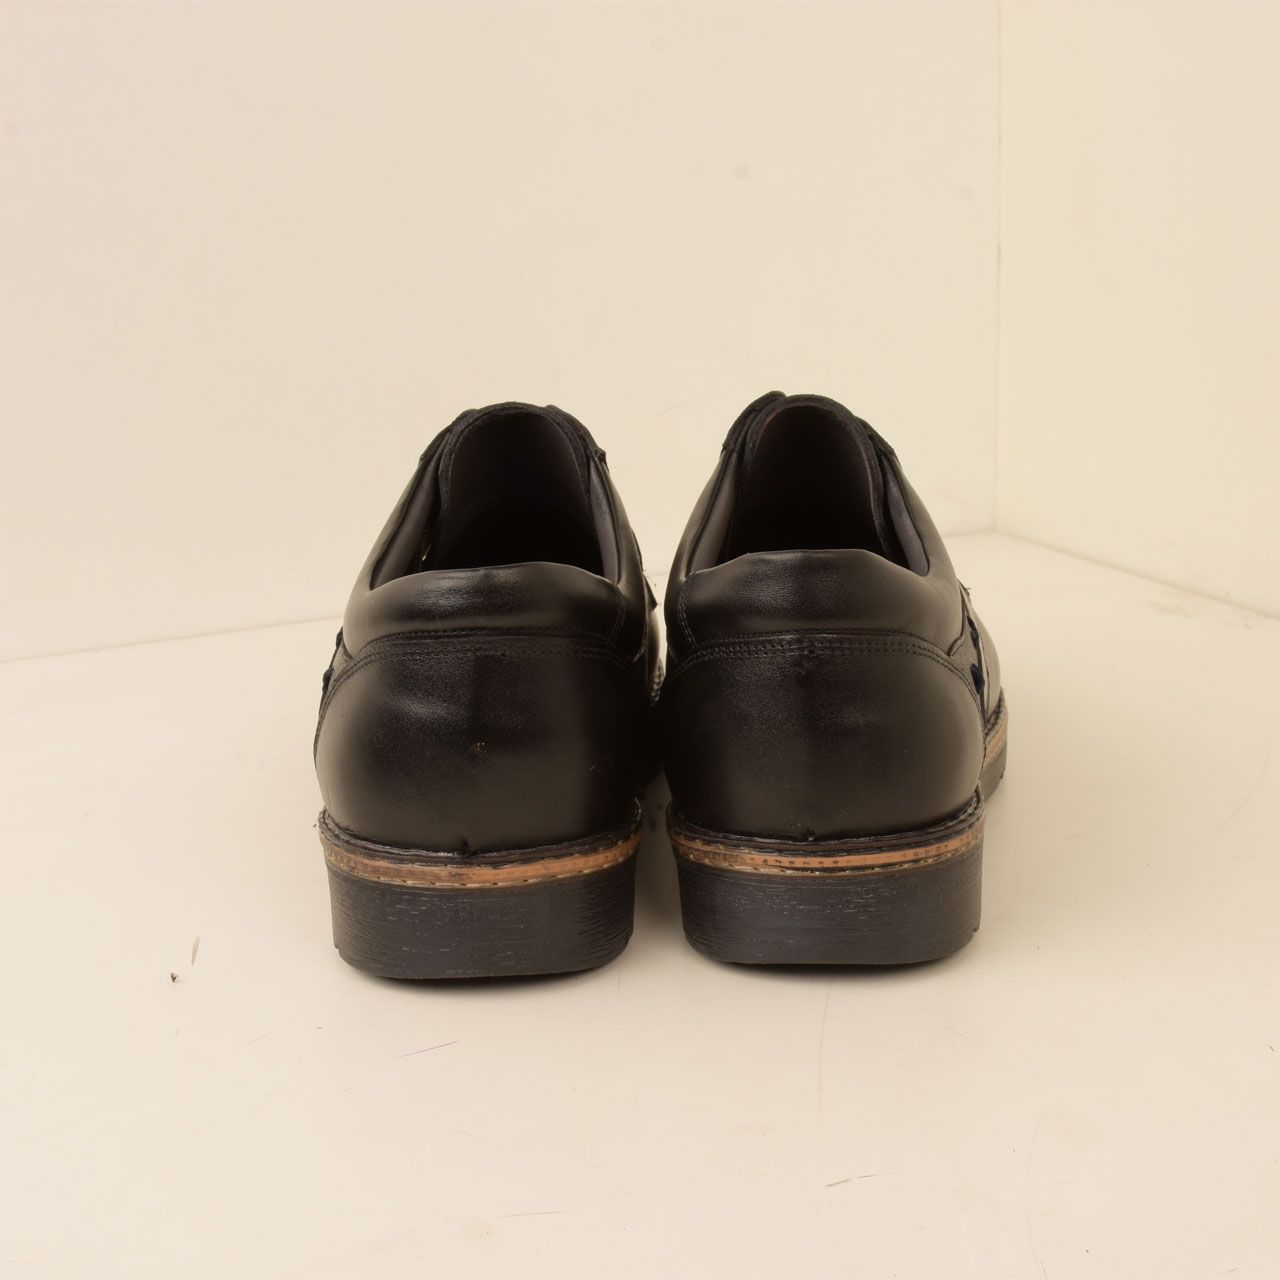  کفش روزمره مردانه پارینه چرم مدل SHO175 -  - 5